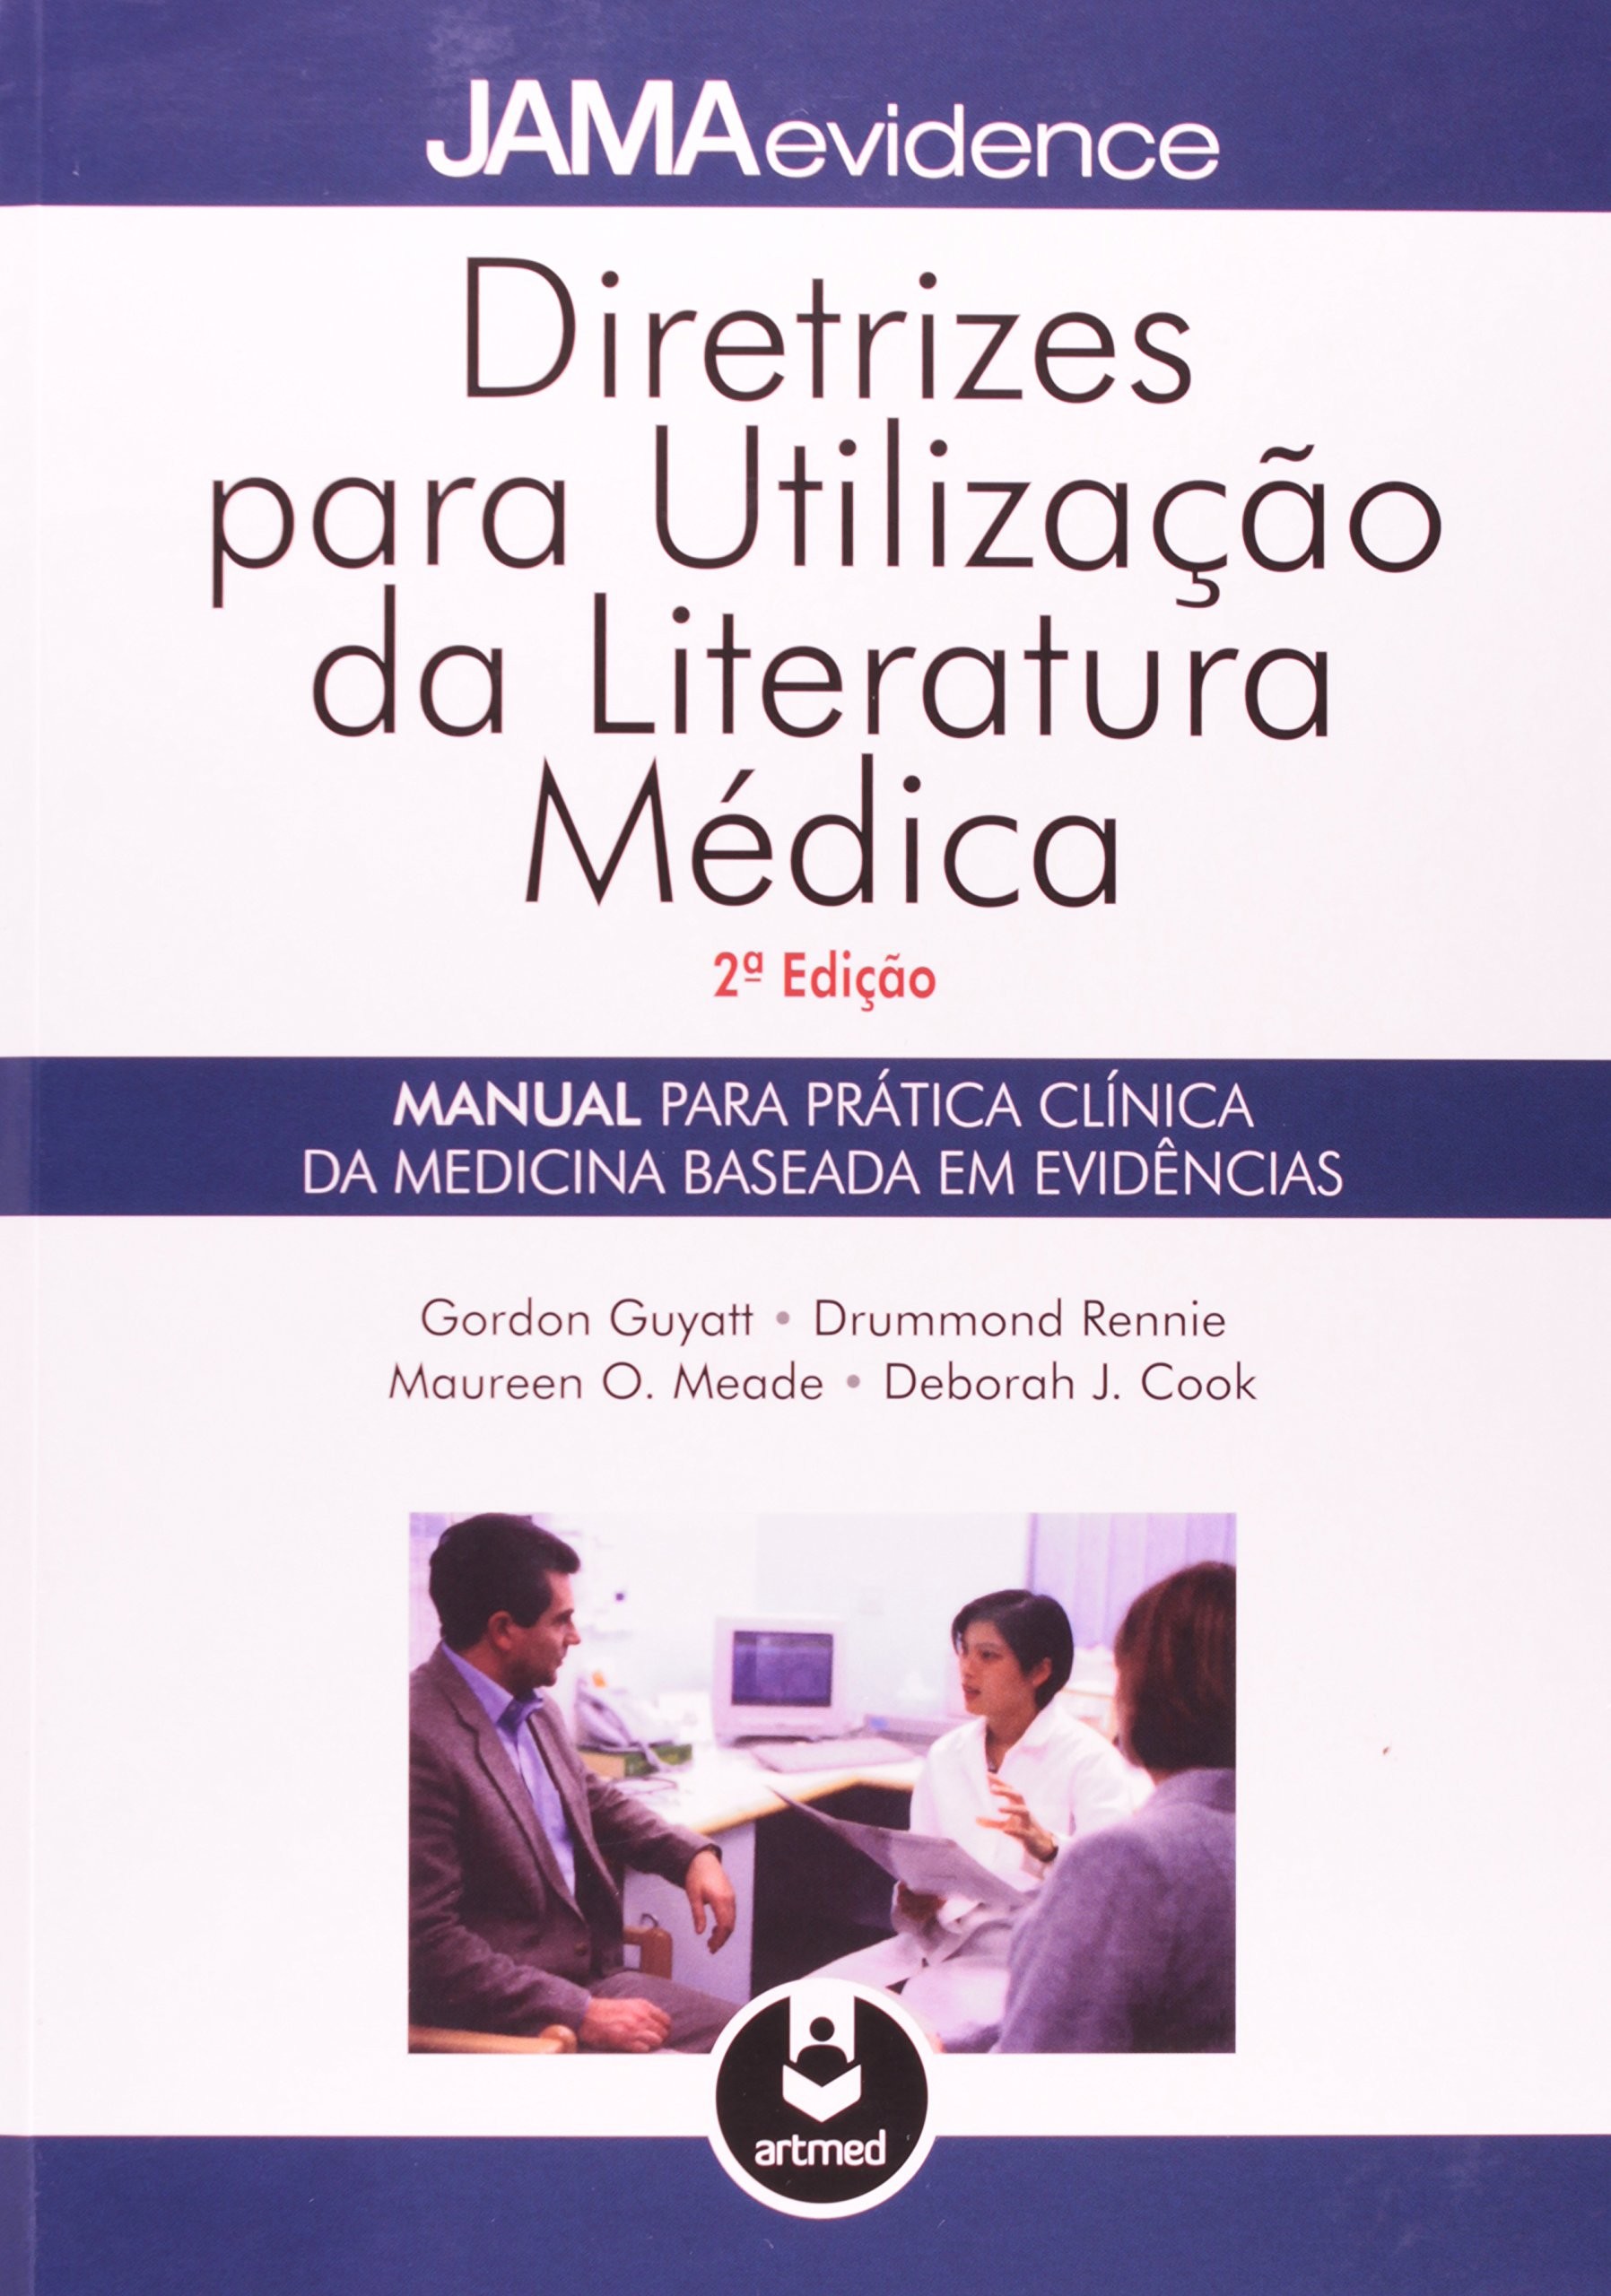 Diretrizes para Utilização da Literatura Médica - Manual para Prática Clínica da Medicina Baseada em